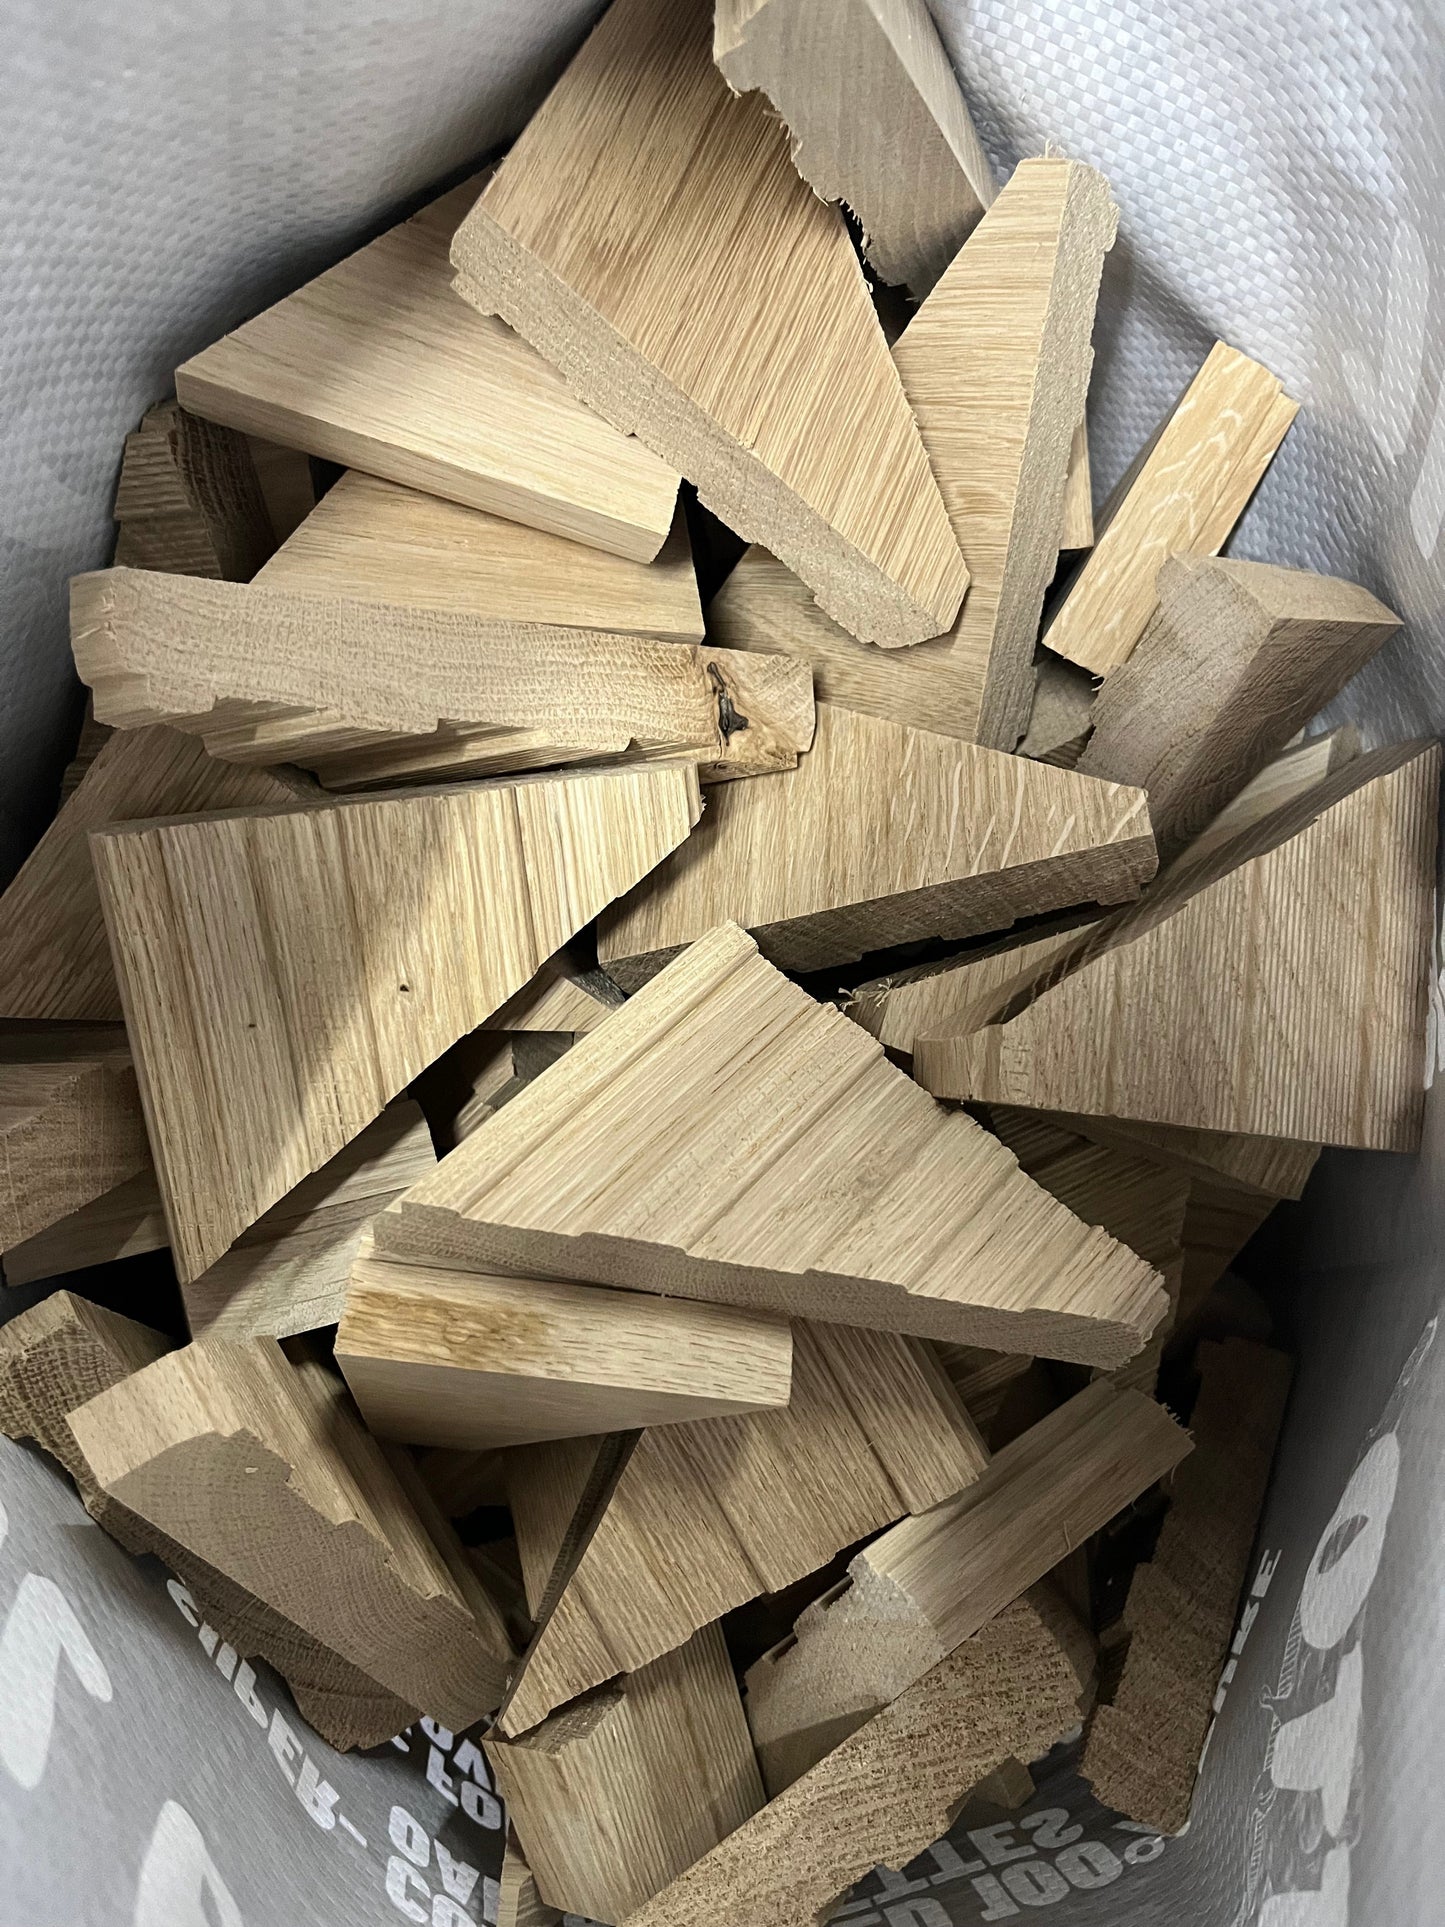 Firewood Offcuts - 20 x 15kg Bags